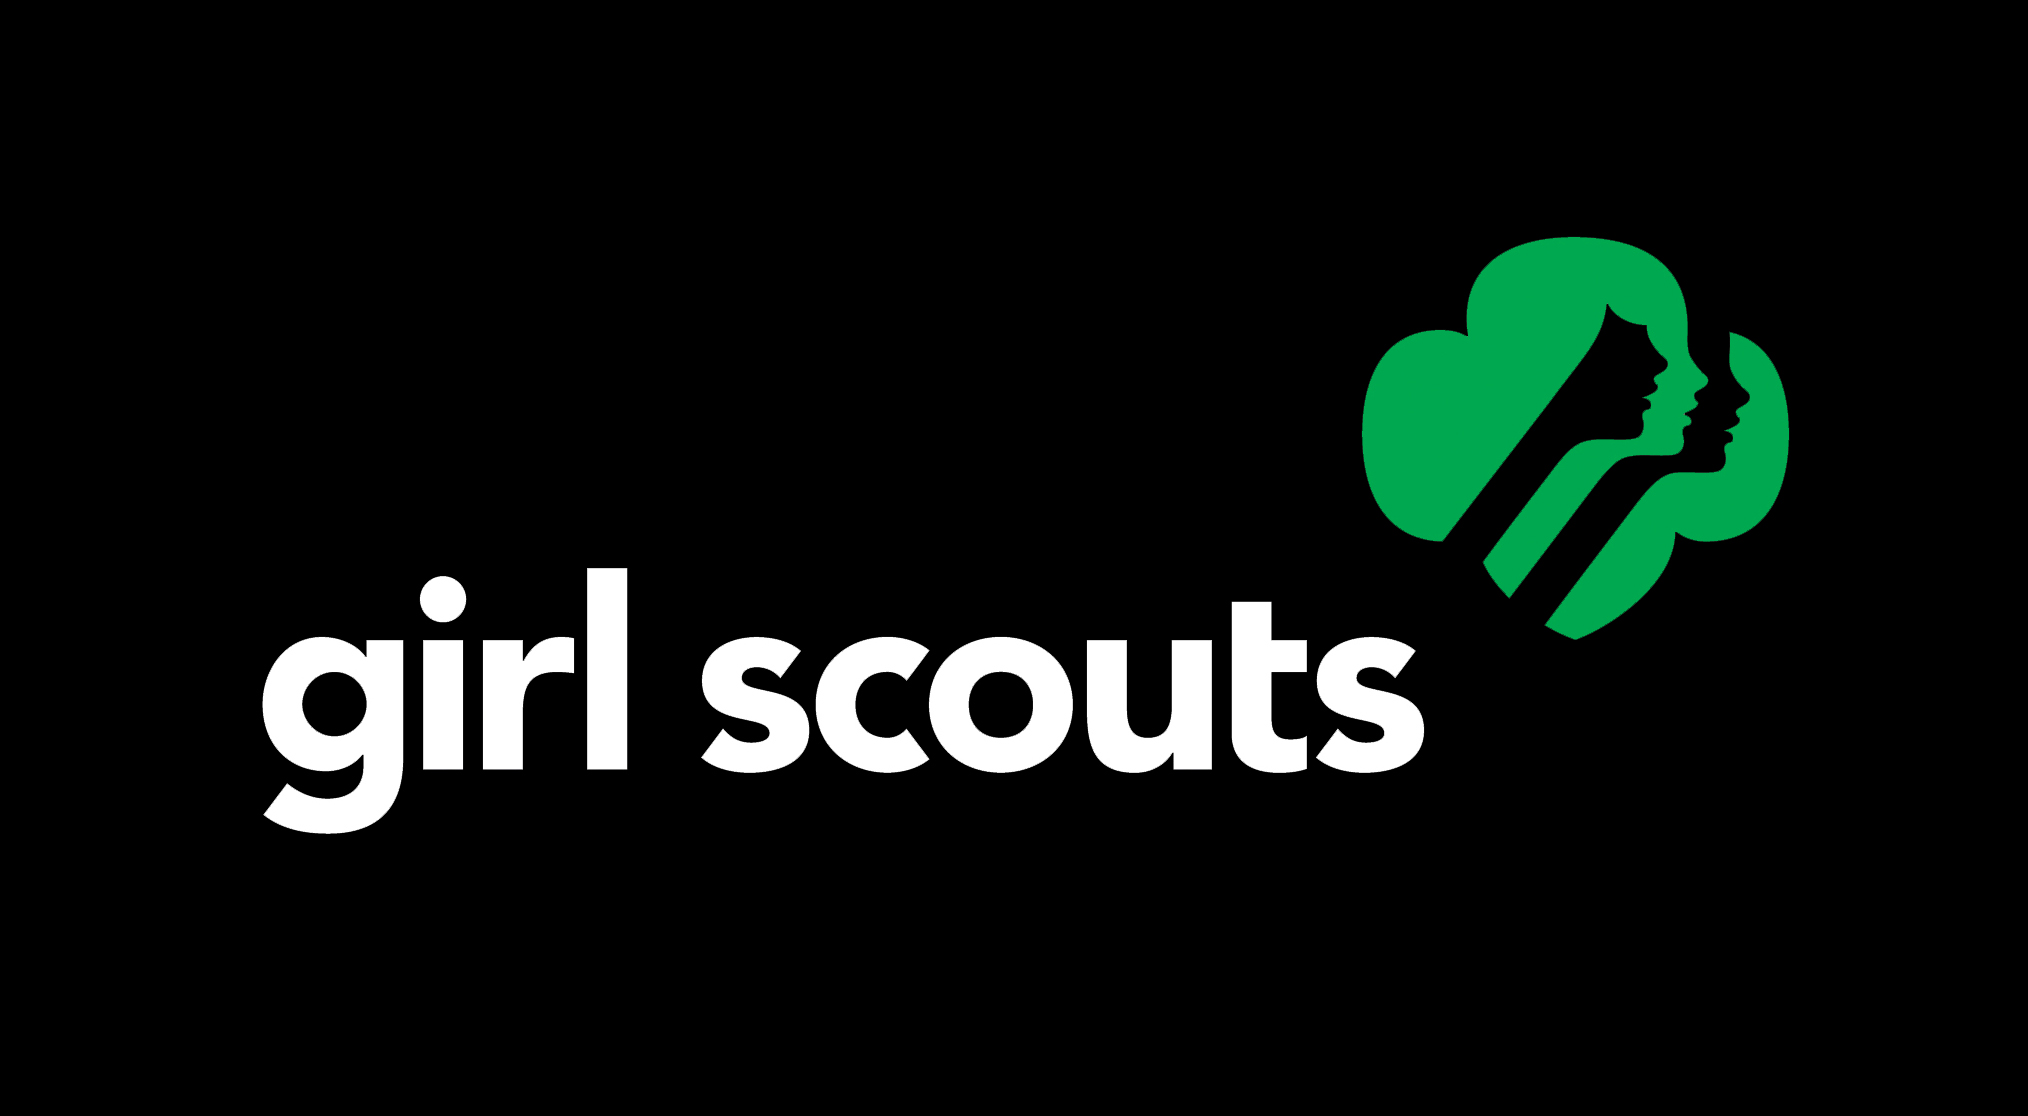 Girl scout Logos